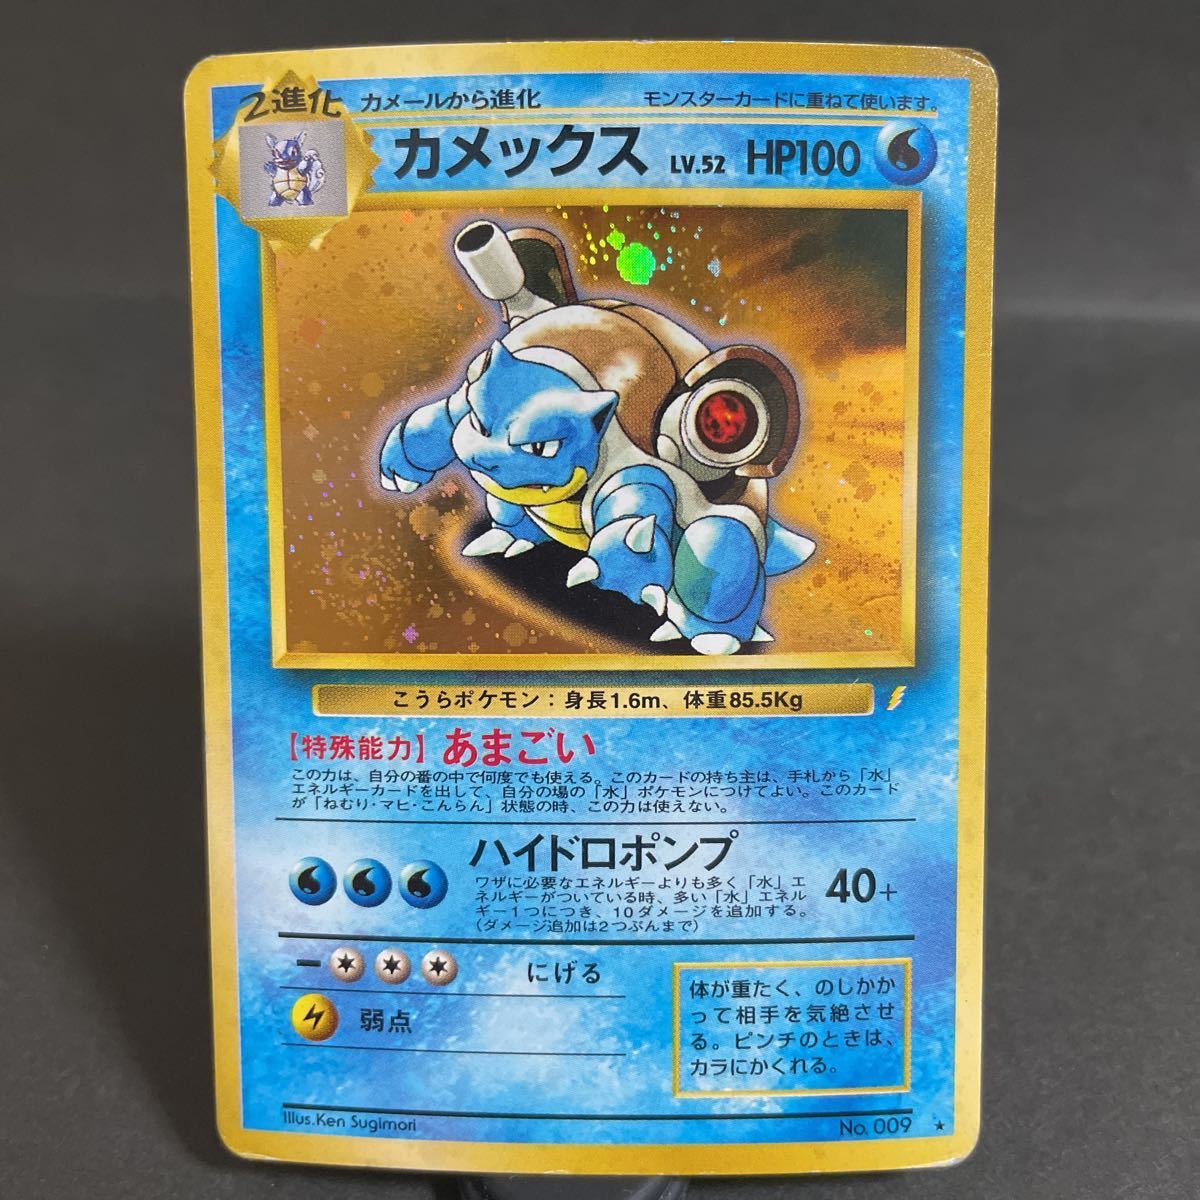 【即決・送料無料】カメックス 旧裏 プロモ No.009 あまごい lv.52 キラ Blastoise ポケモンカード 非売品 PROMO  pokemon card